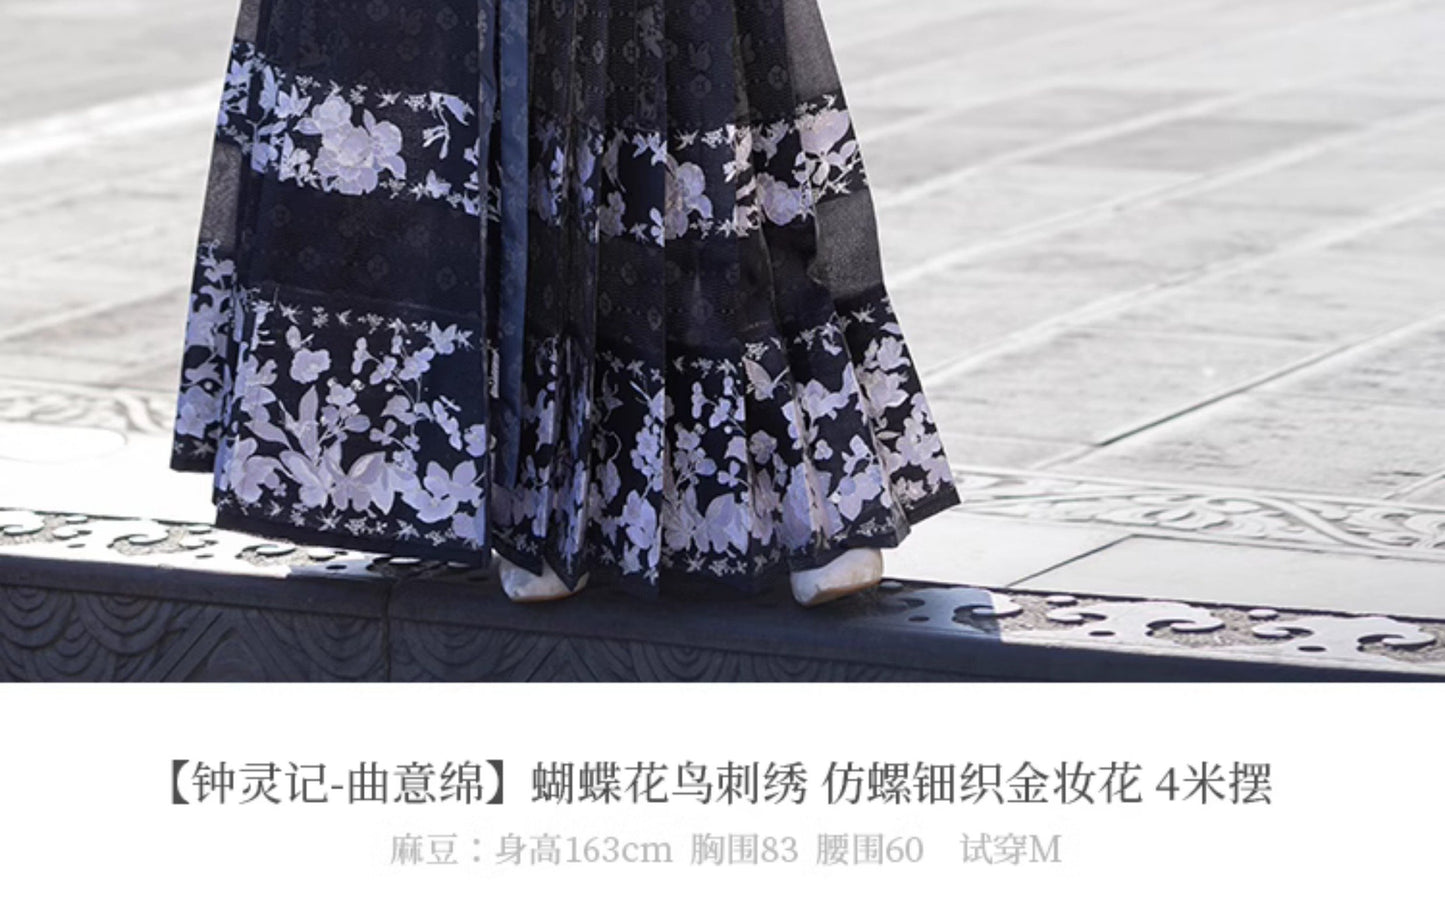 Zhong Ling Ji’s New Song Qu Yimian Hanfu